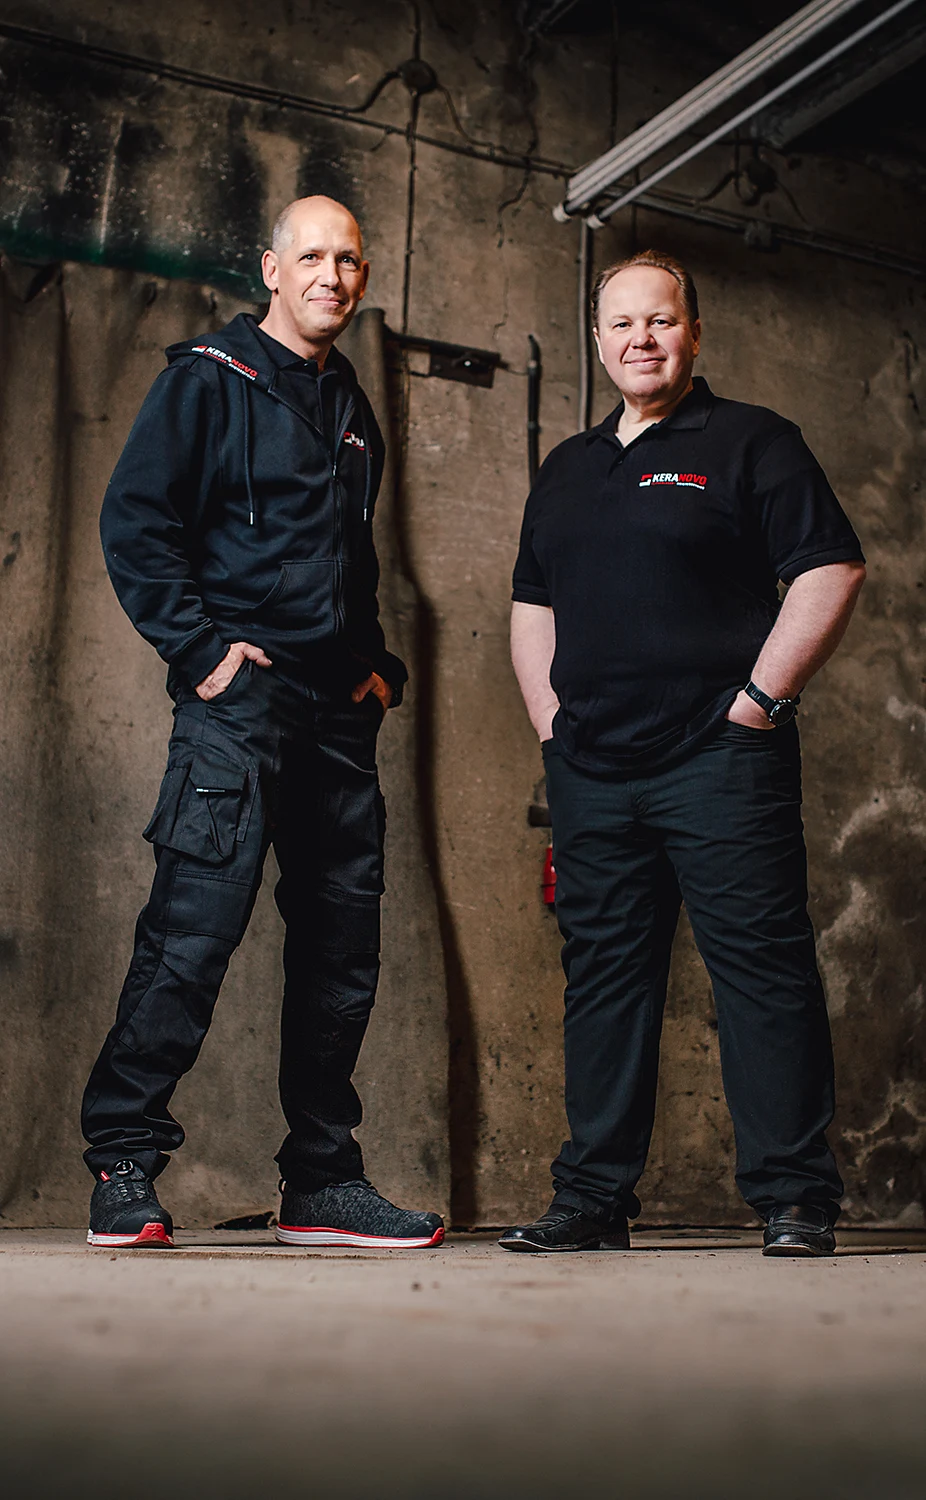 Frank Roß und Thomas Meßner die beiden Inhaber von dem Fliesenleger Meisterbetrieb Keranovo aus Düren tragen Kleidung mit Keranovo-Schriftzug und lächeln aufrecht stehend in die Kamera.